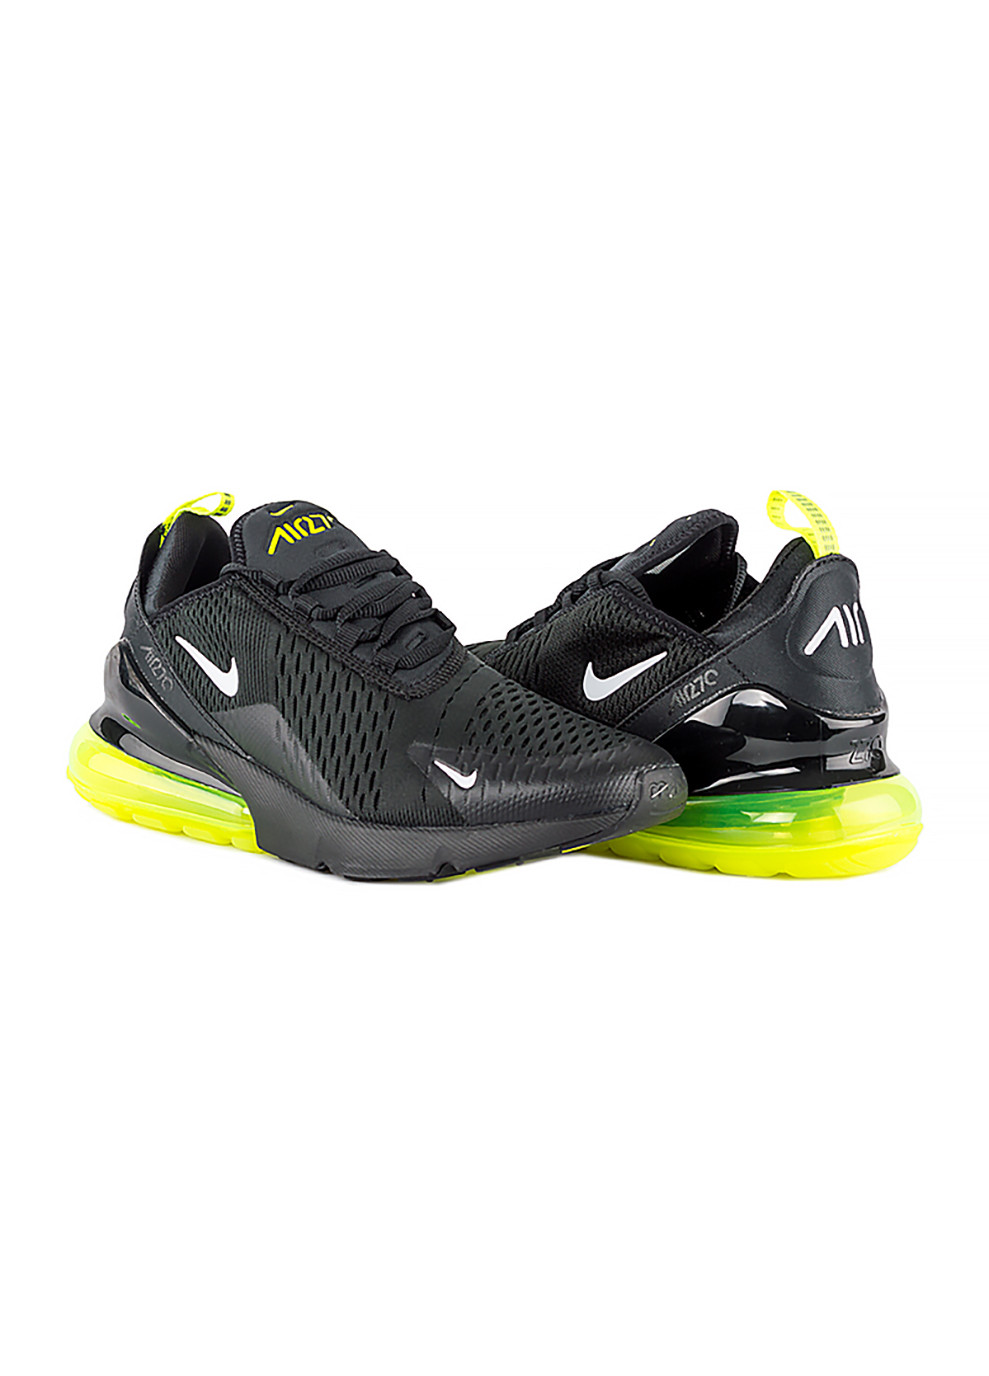 Черные демисезонные мужские кроссовки air max 270 ess черный Nike